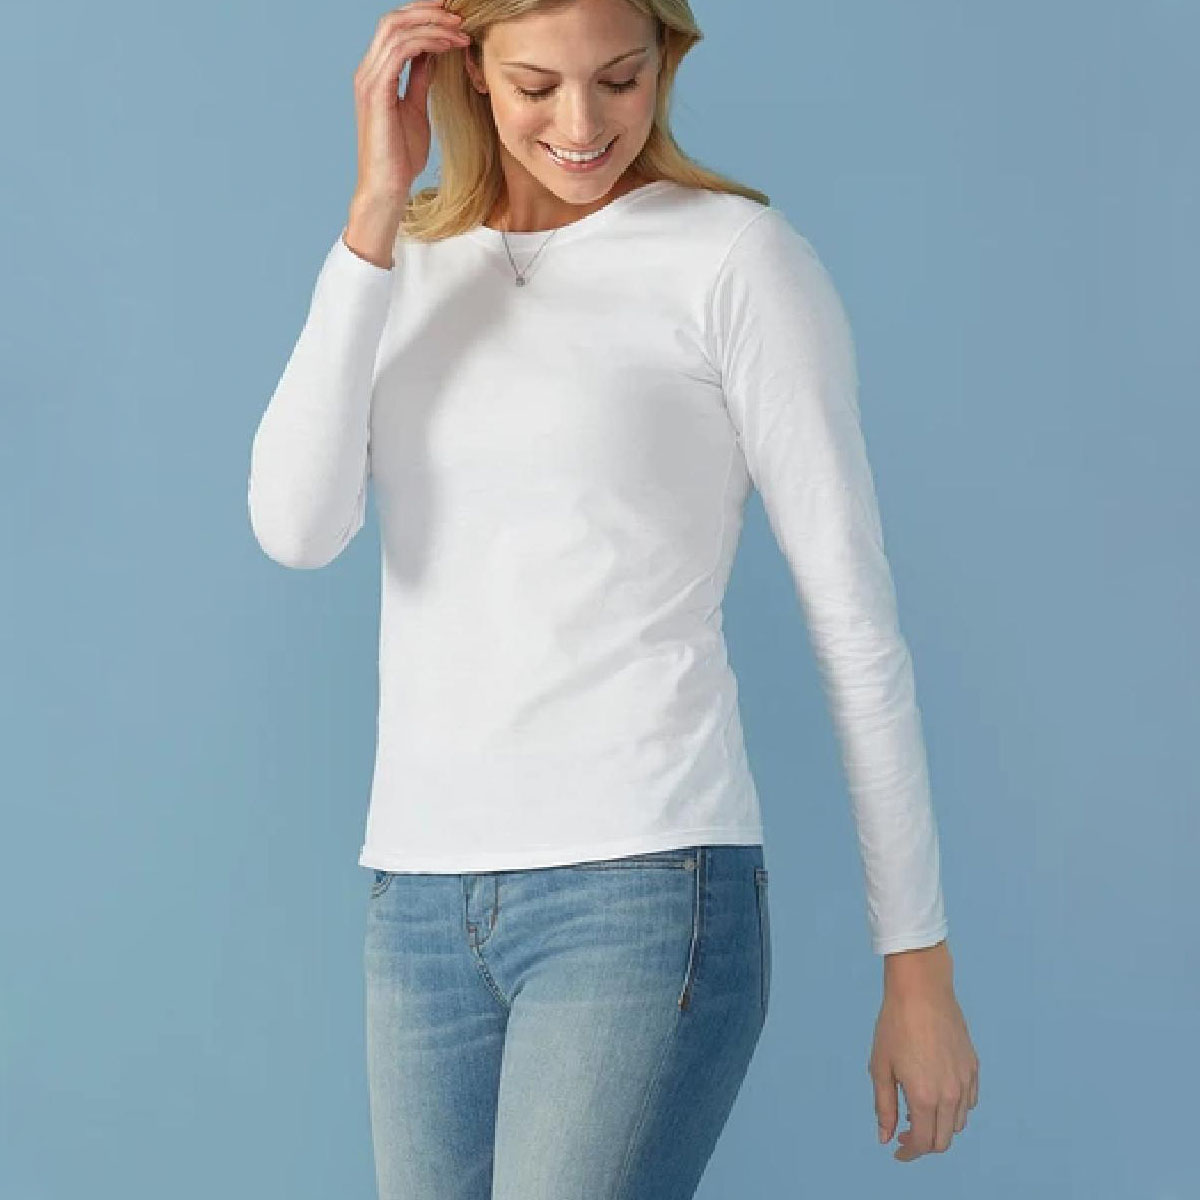 Camisetas de manga larga para mujer